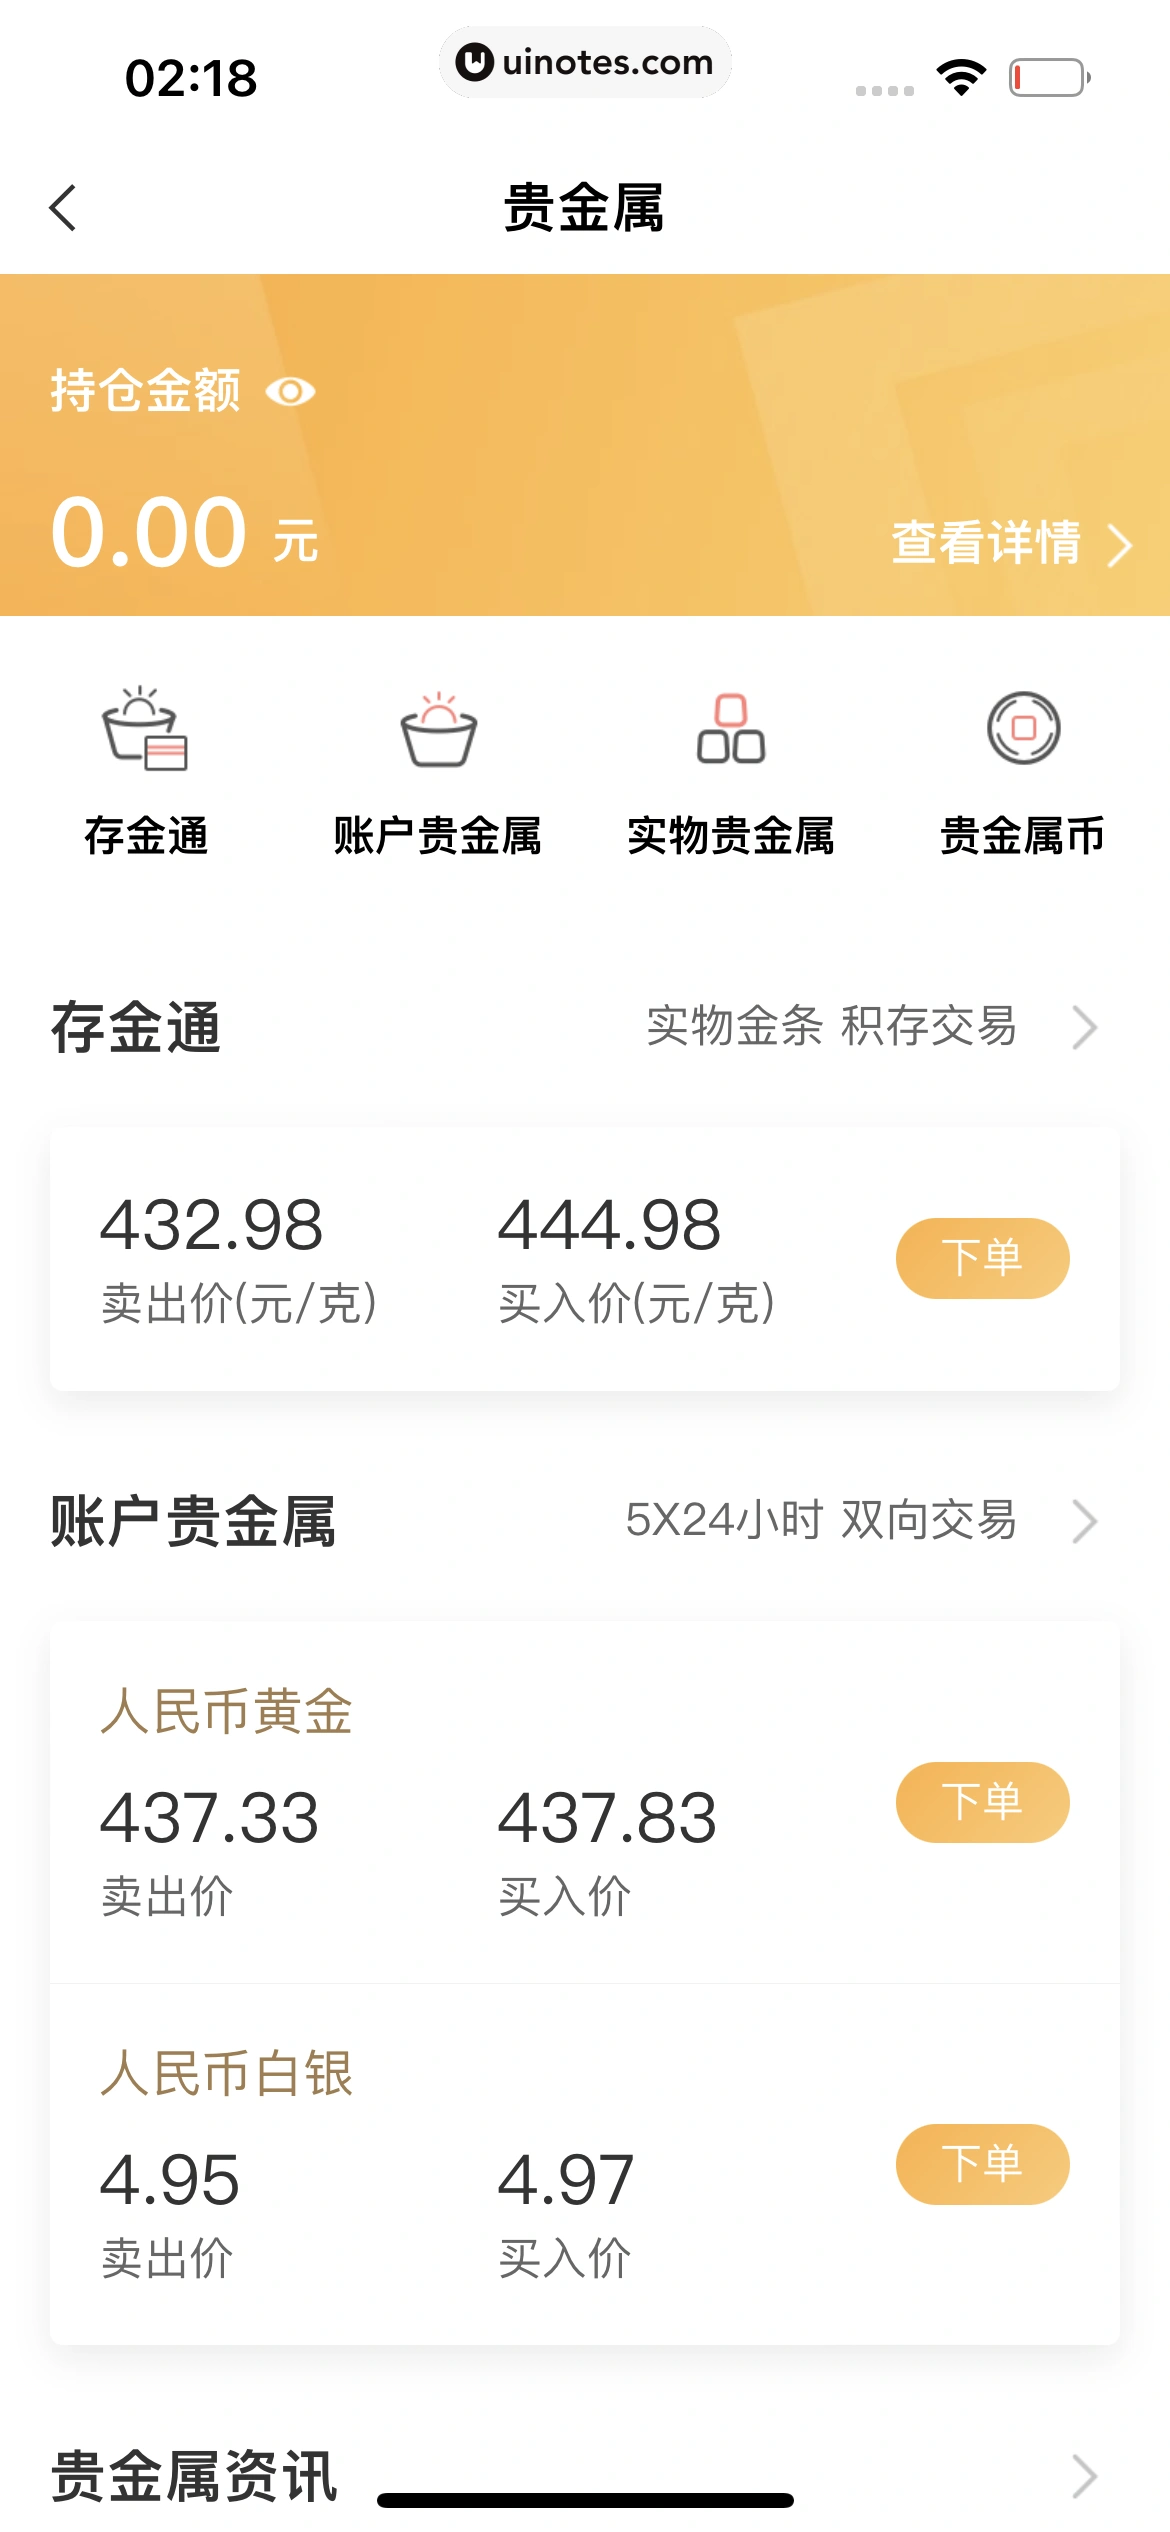 中国农业银行 App 截图 208 - UI Notes